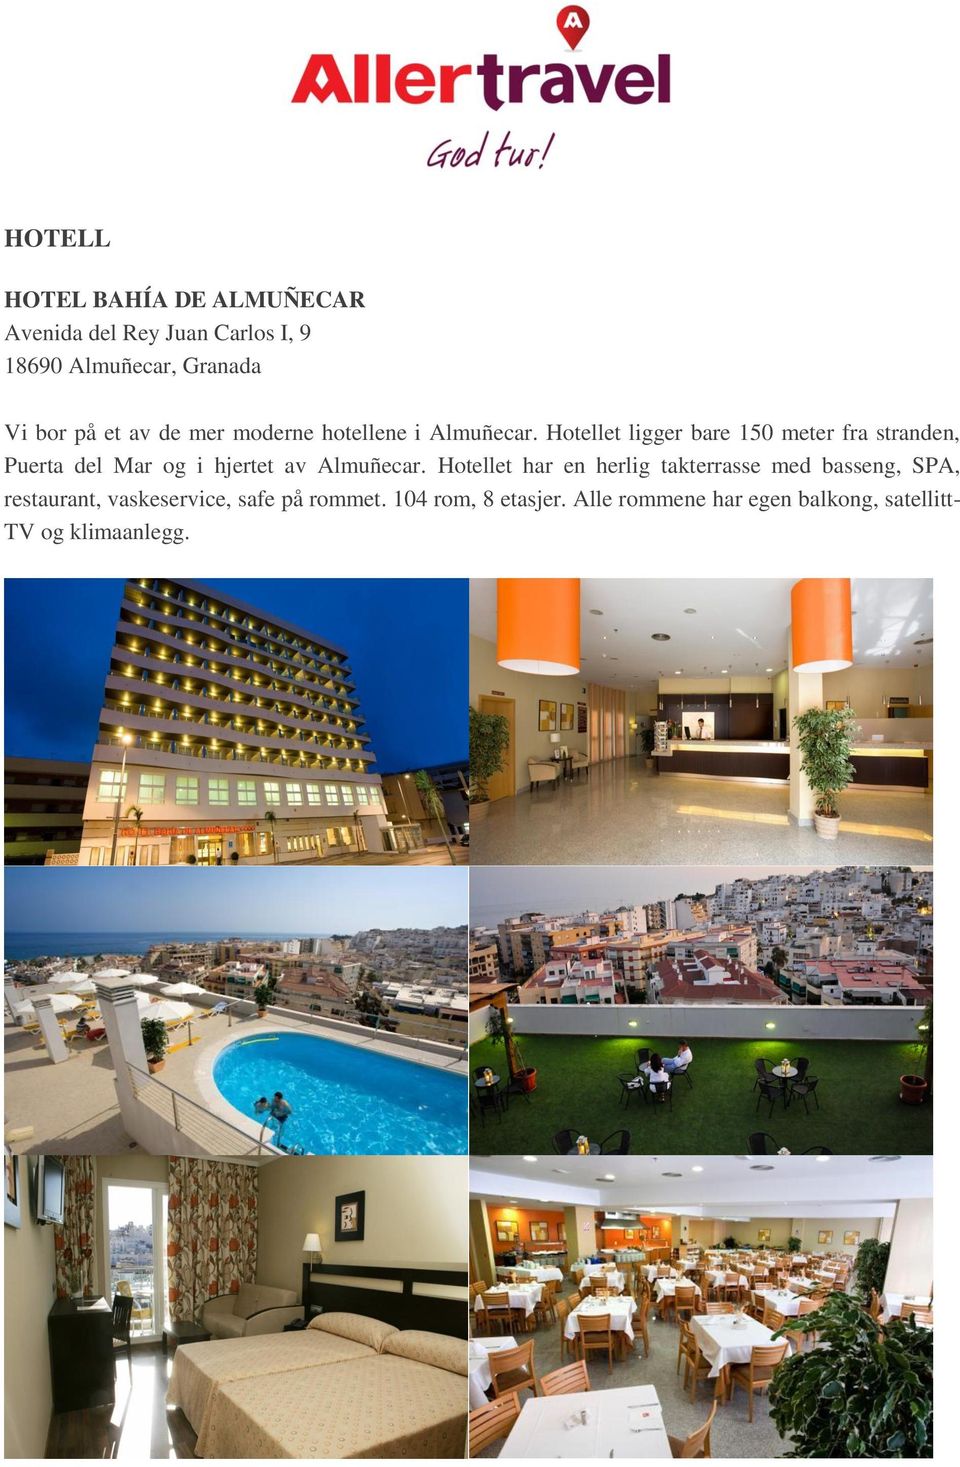 Hotellet ligger bare 150 meter fra stranden, Puerta del Mar og i hjertet av Almuñecar.